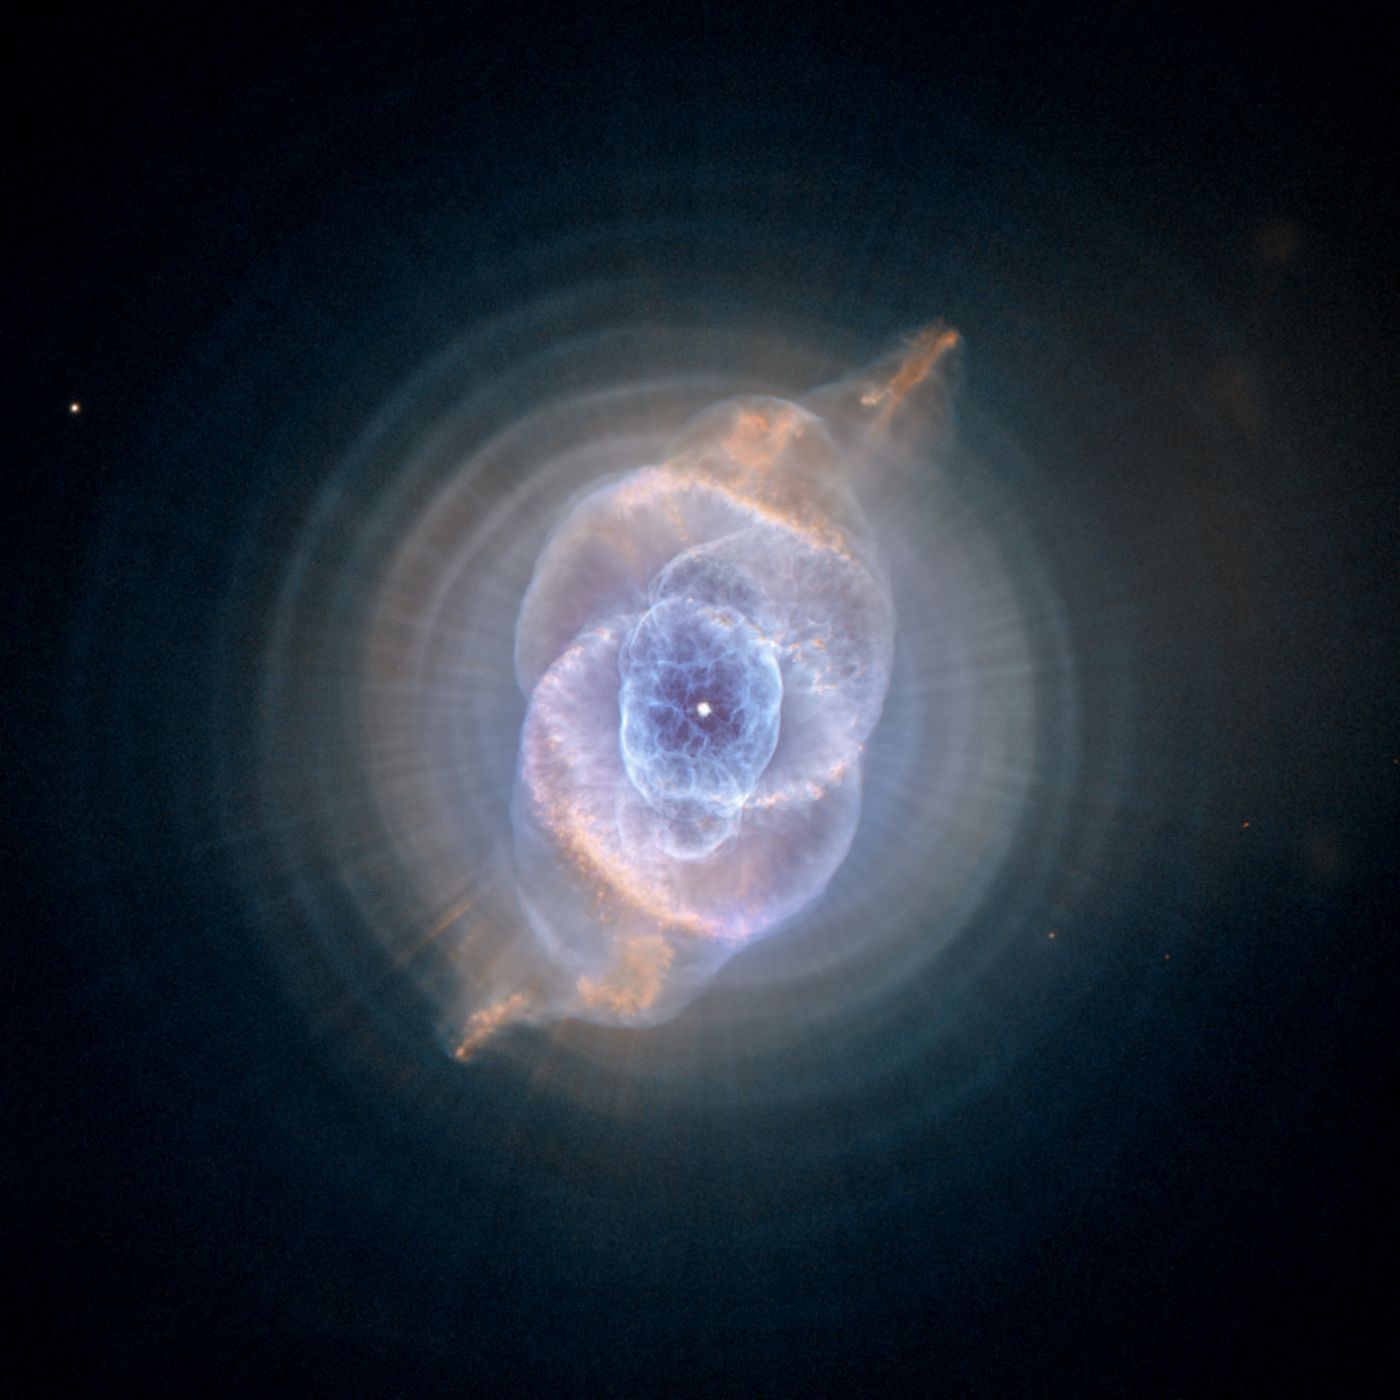 La nebulosa del ojo de gato, cazada por el Hubble en 2005